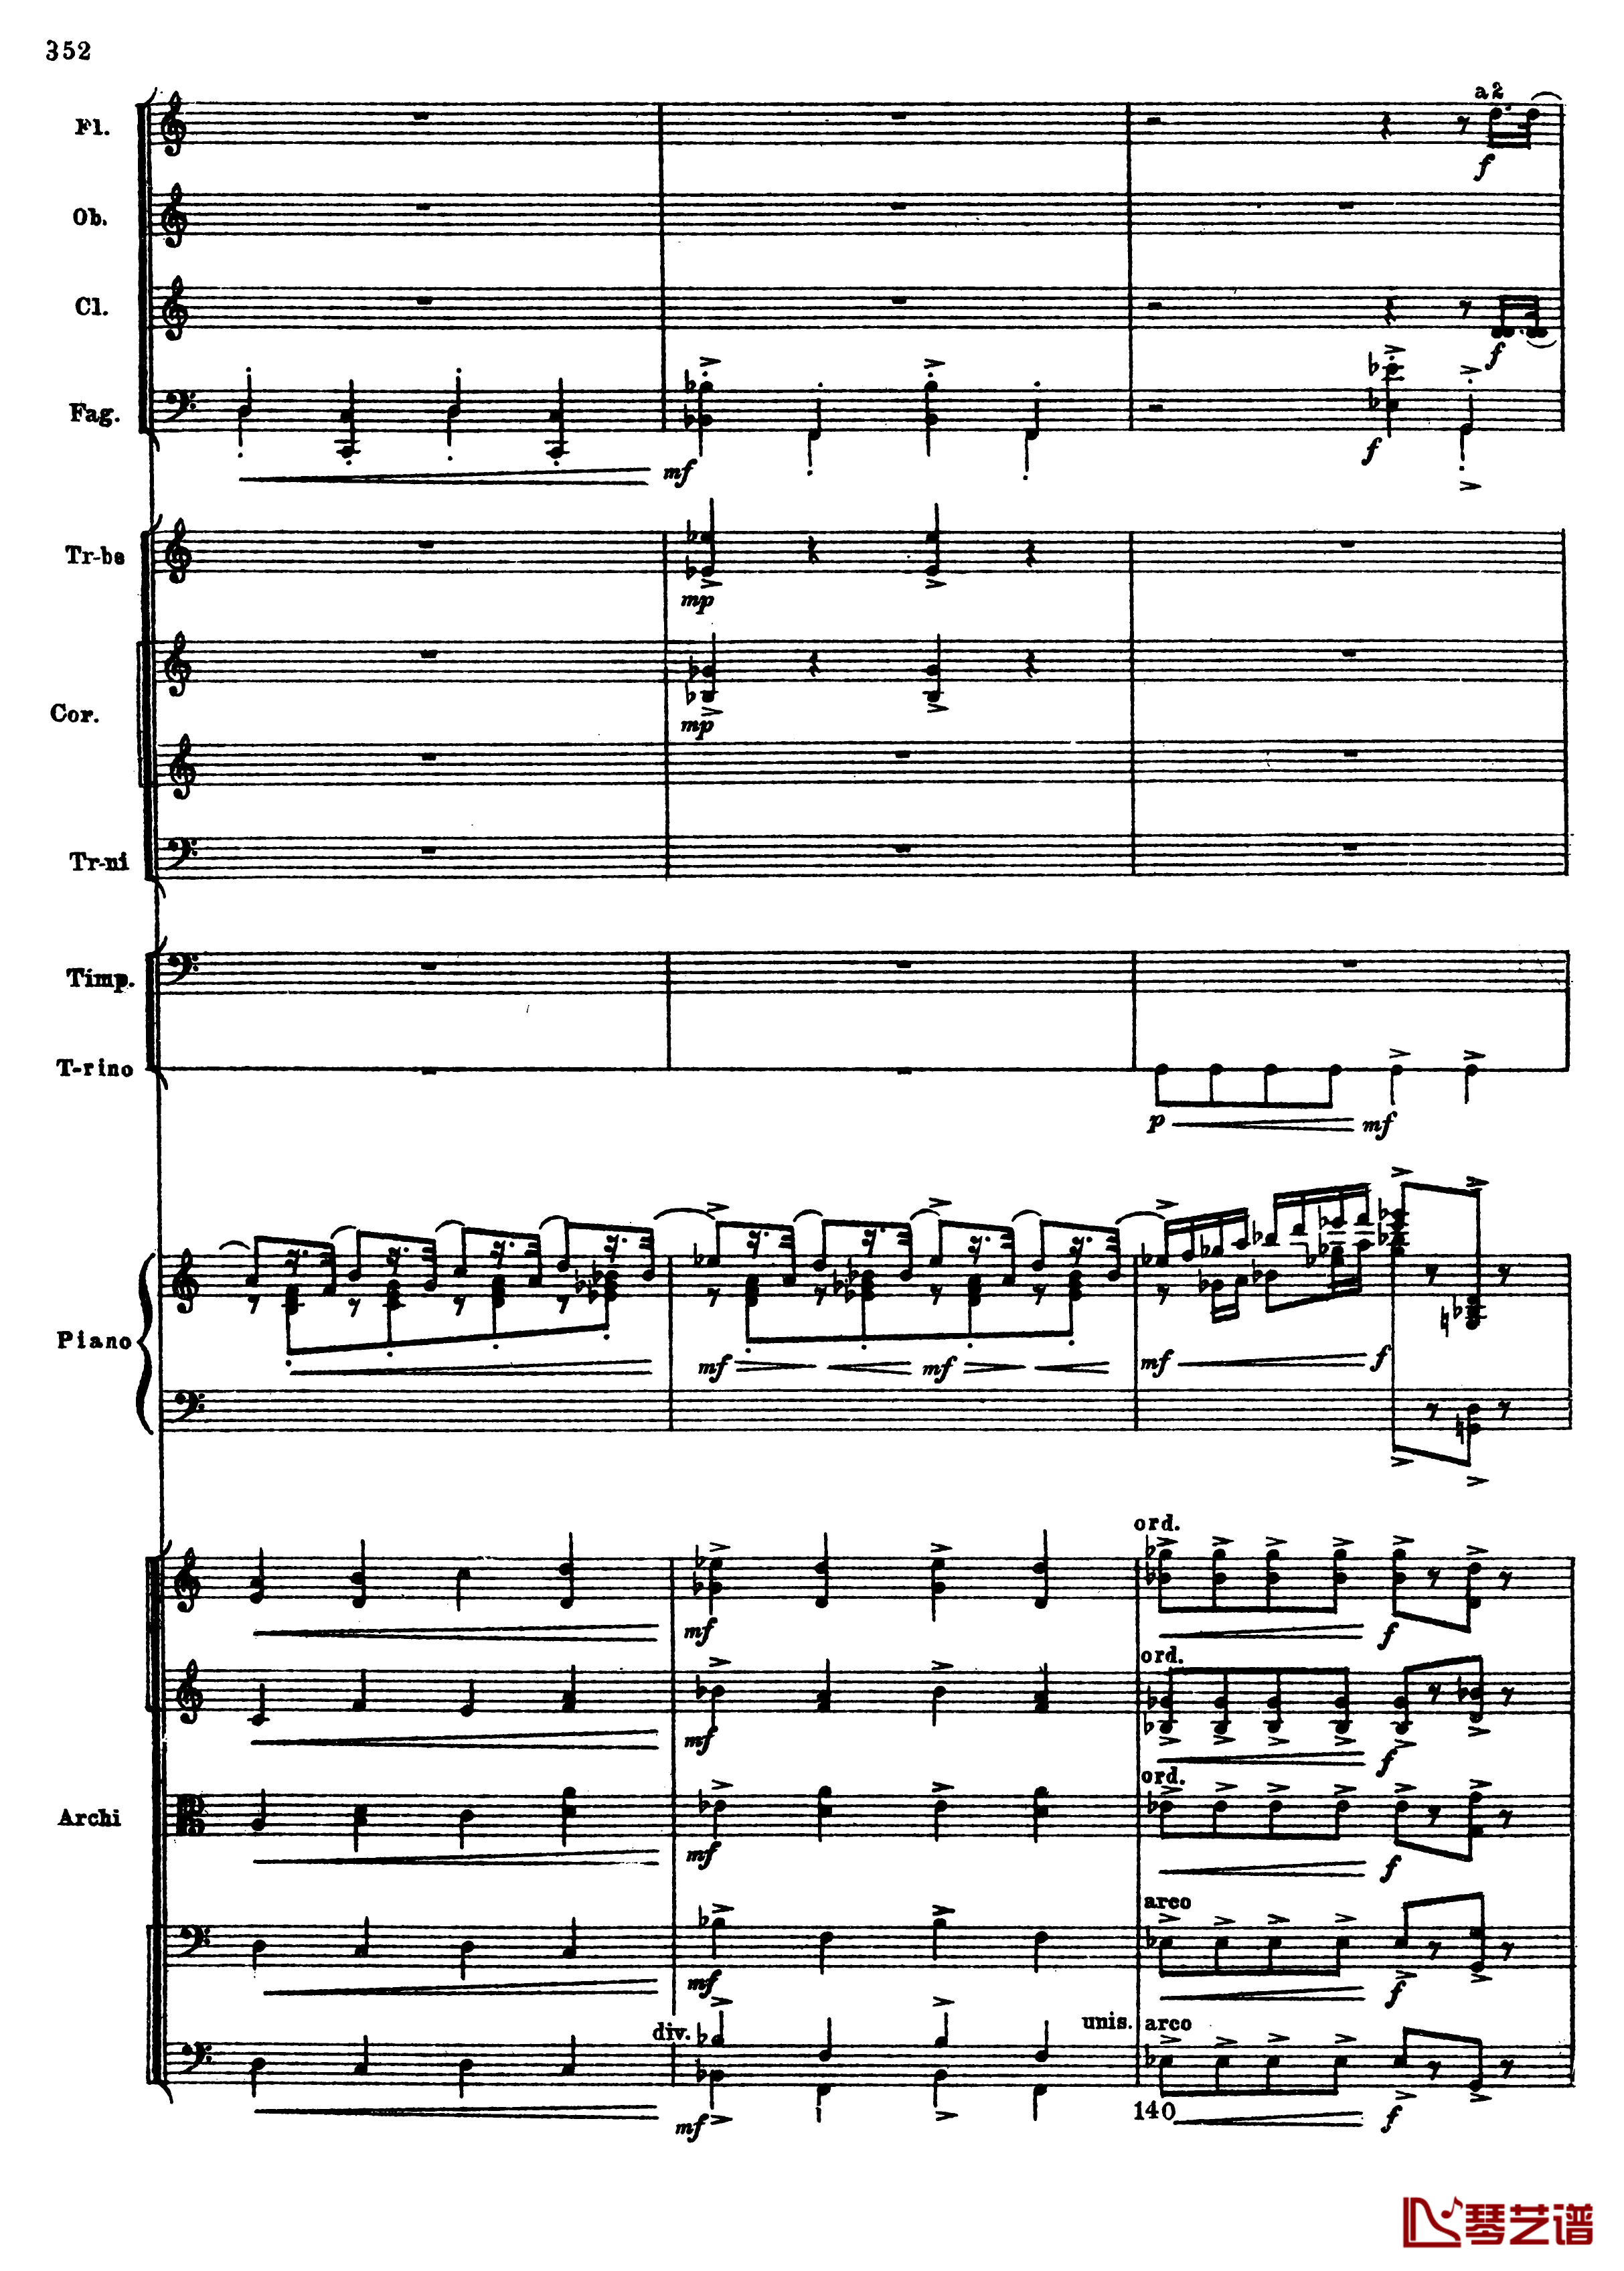 普罗科菲耶夫第三钢琴协奏曲钢琴谱-总谱-普罗科非耶夫84